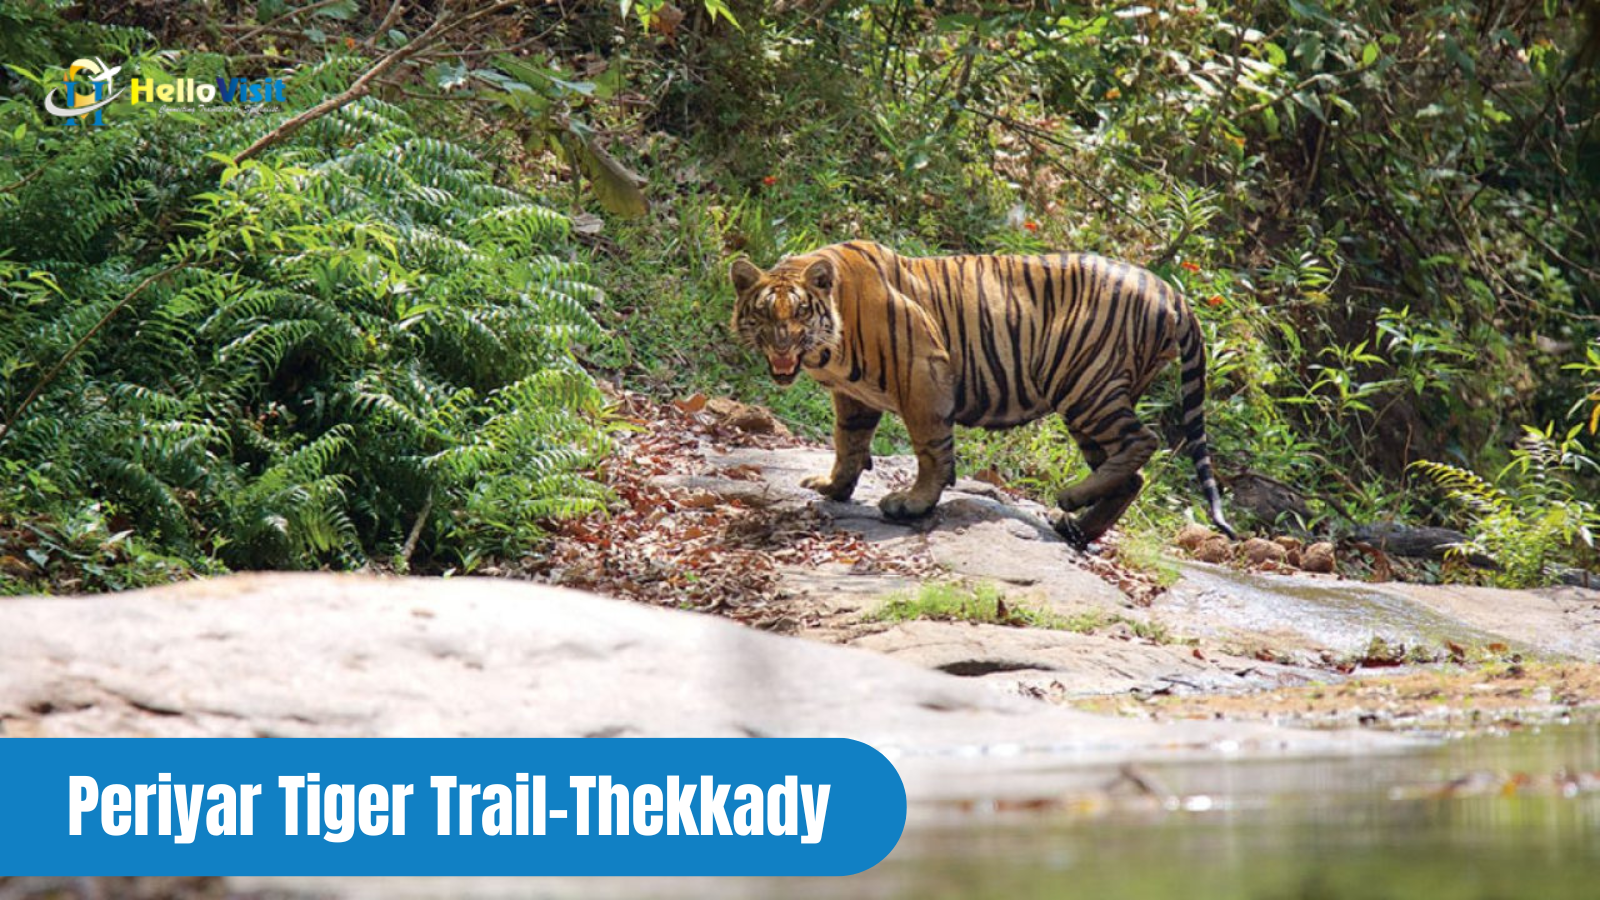 Periyar Tiger Trail-Thekkady